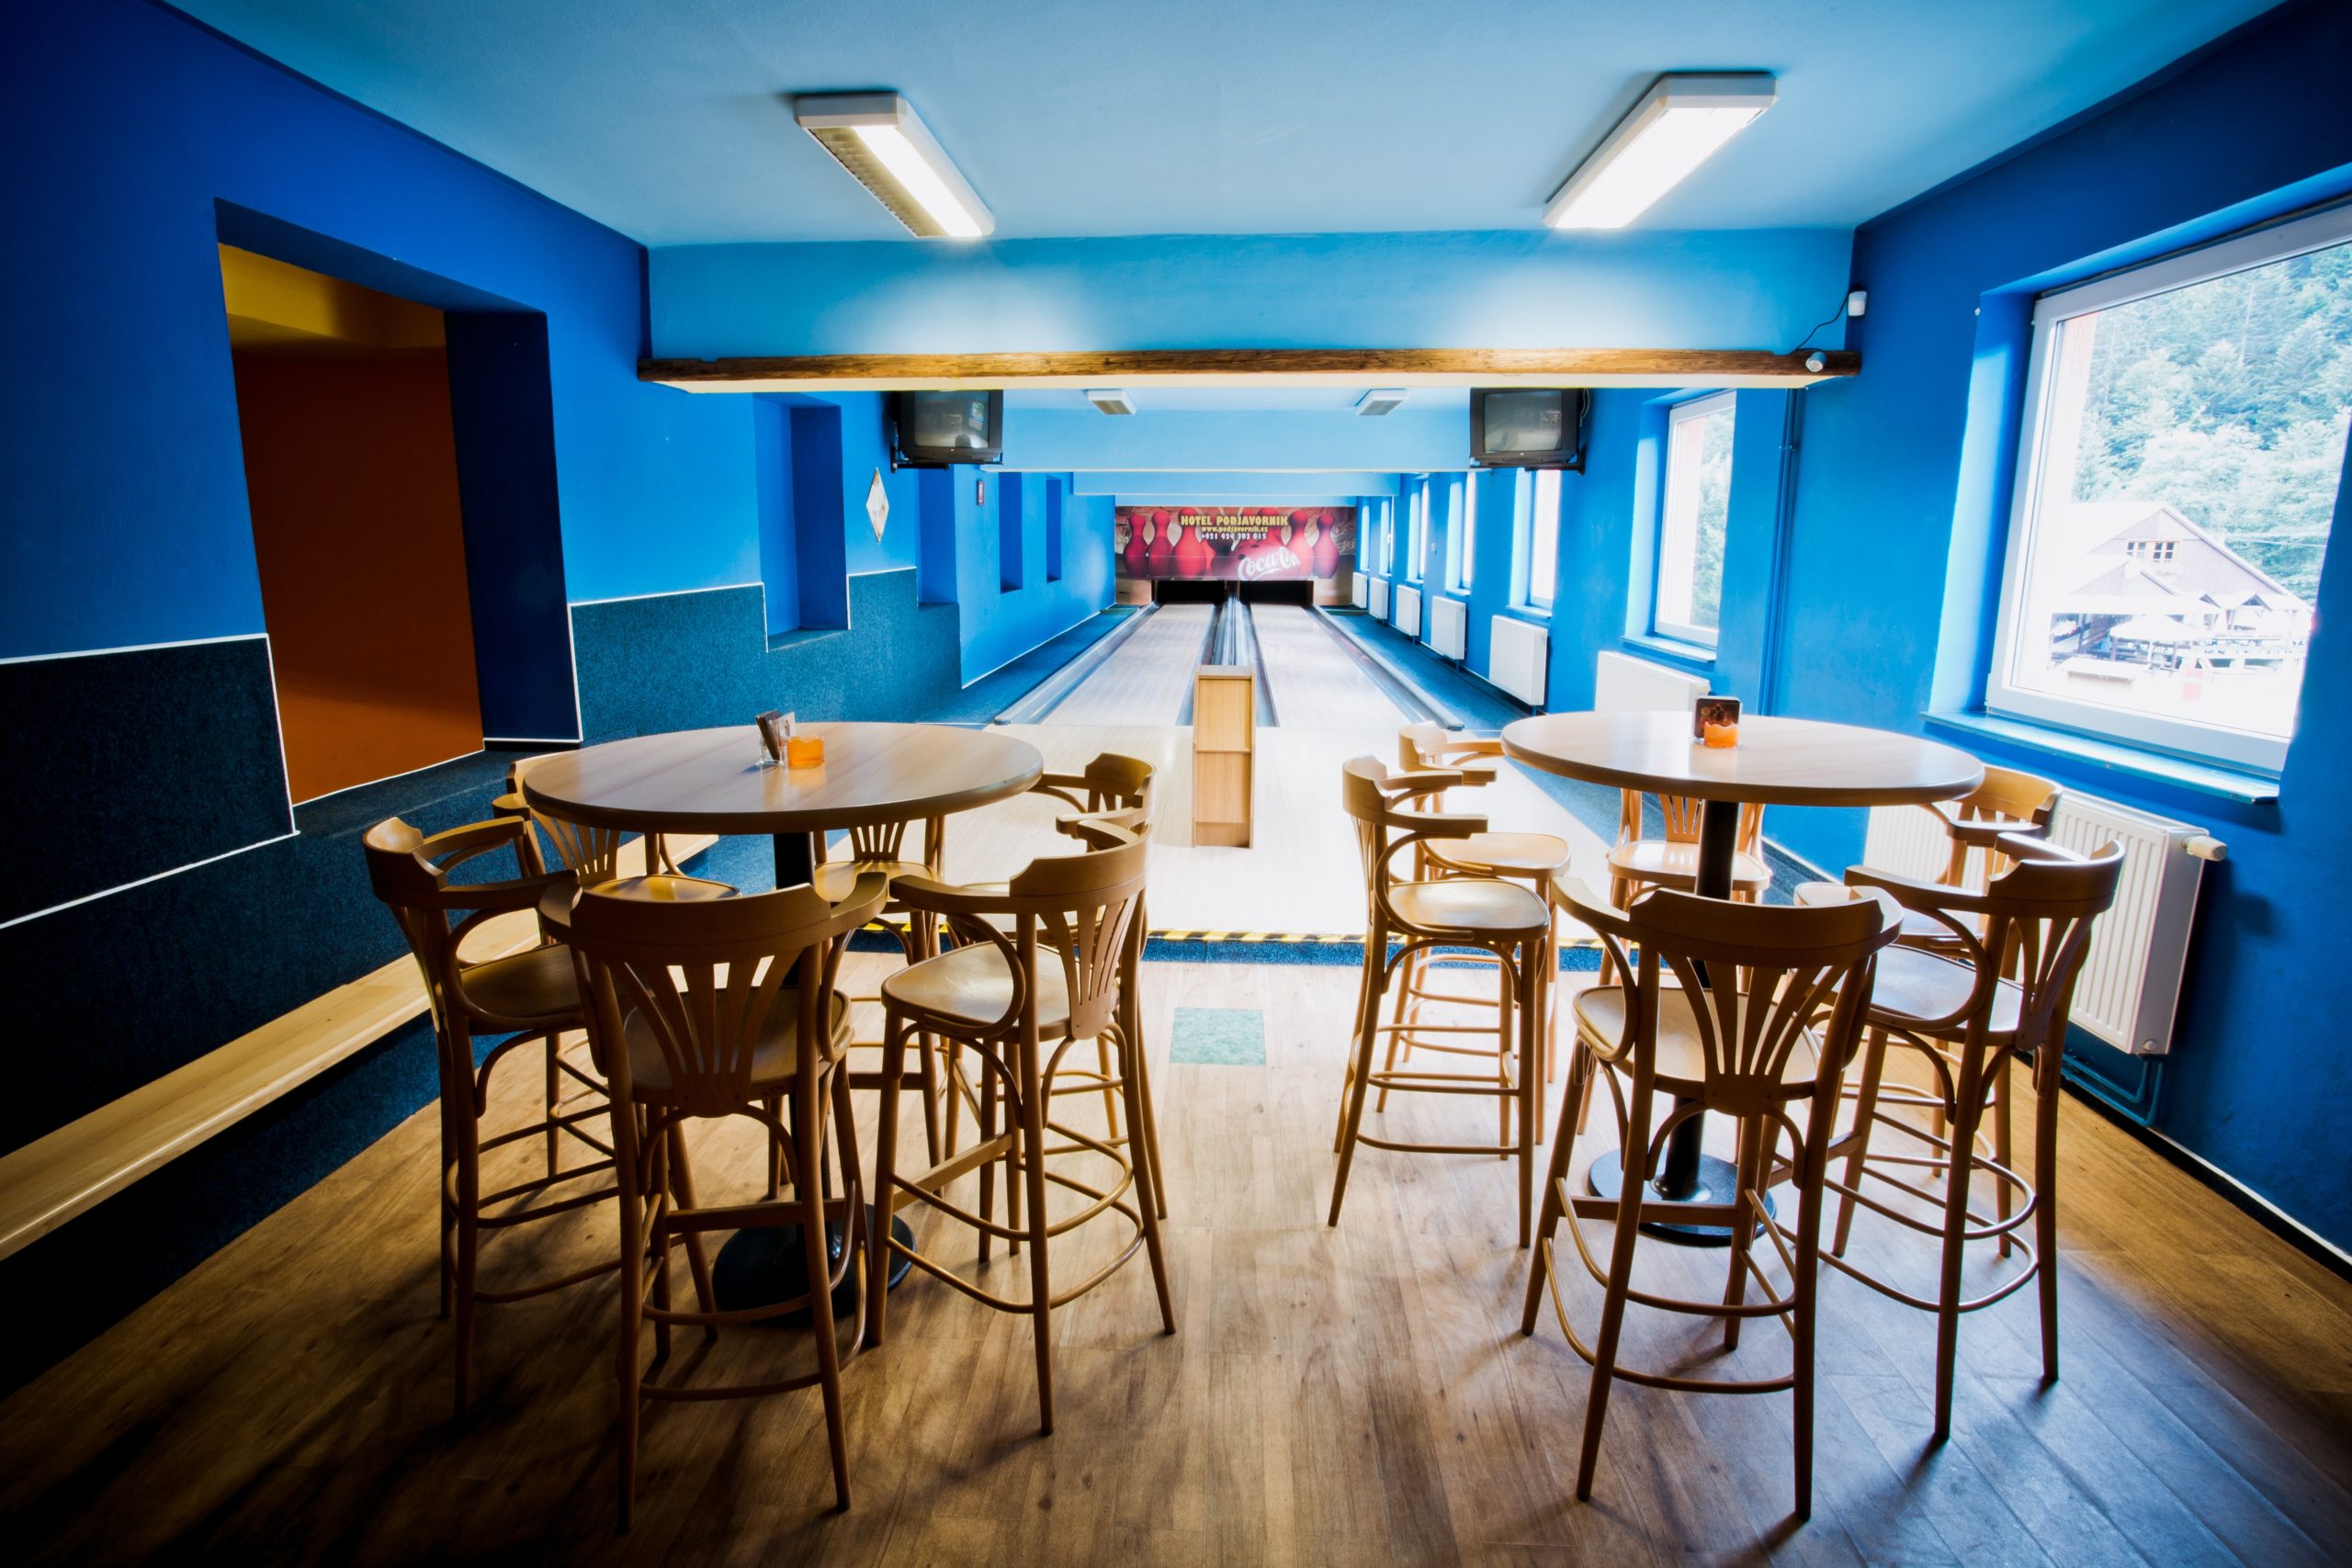 restauranta-bar-room-interior-design-bowling-hotel